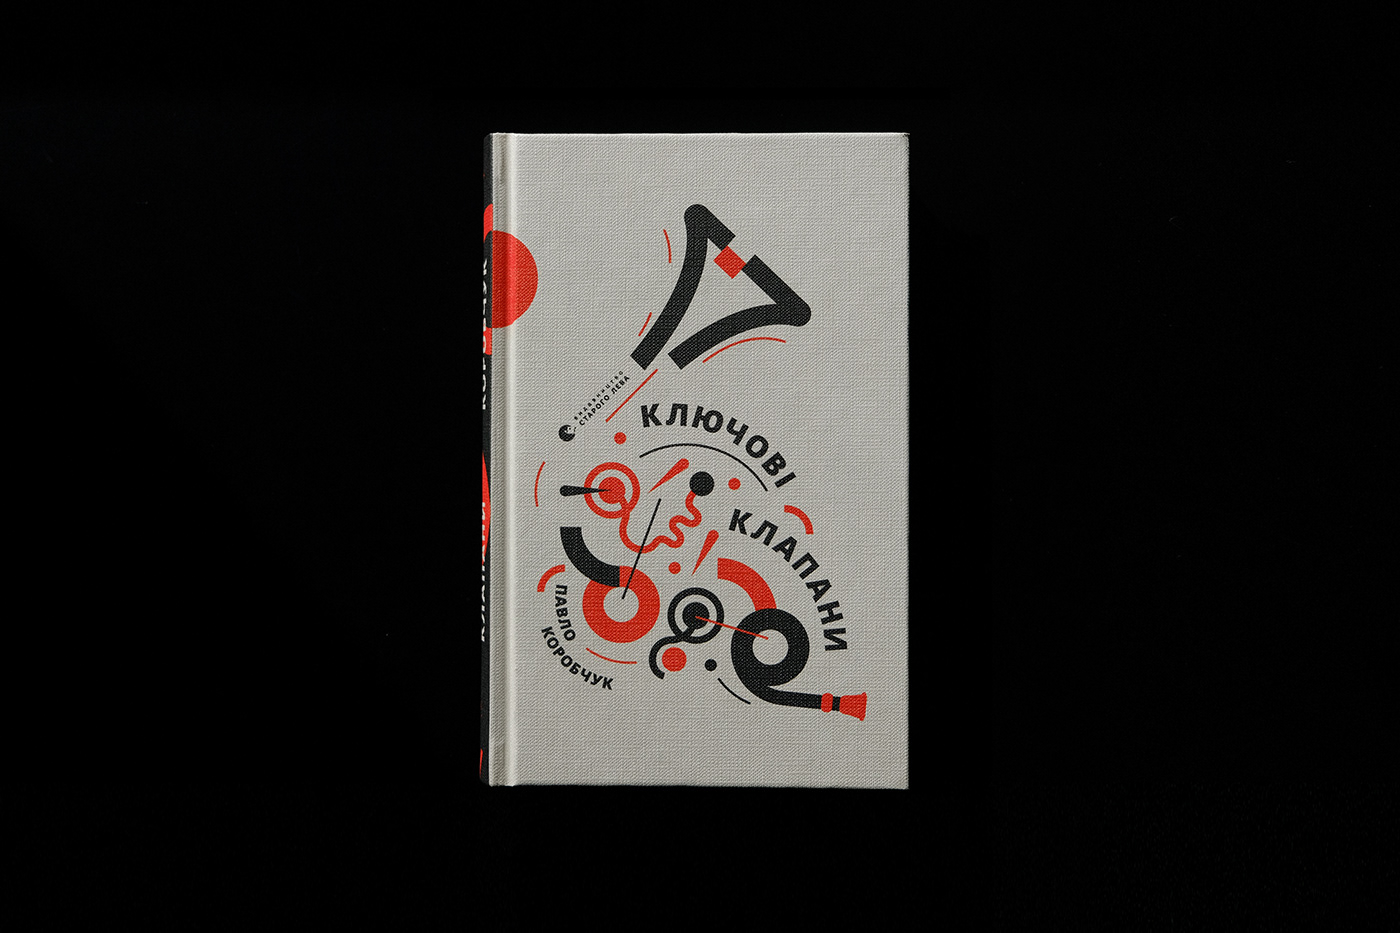 book cover book DESIGN EDITORIAL FUTURISM GEOMETRIC PANTONES GRAPHIC design